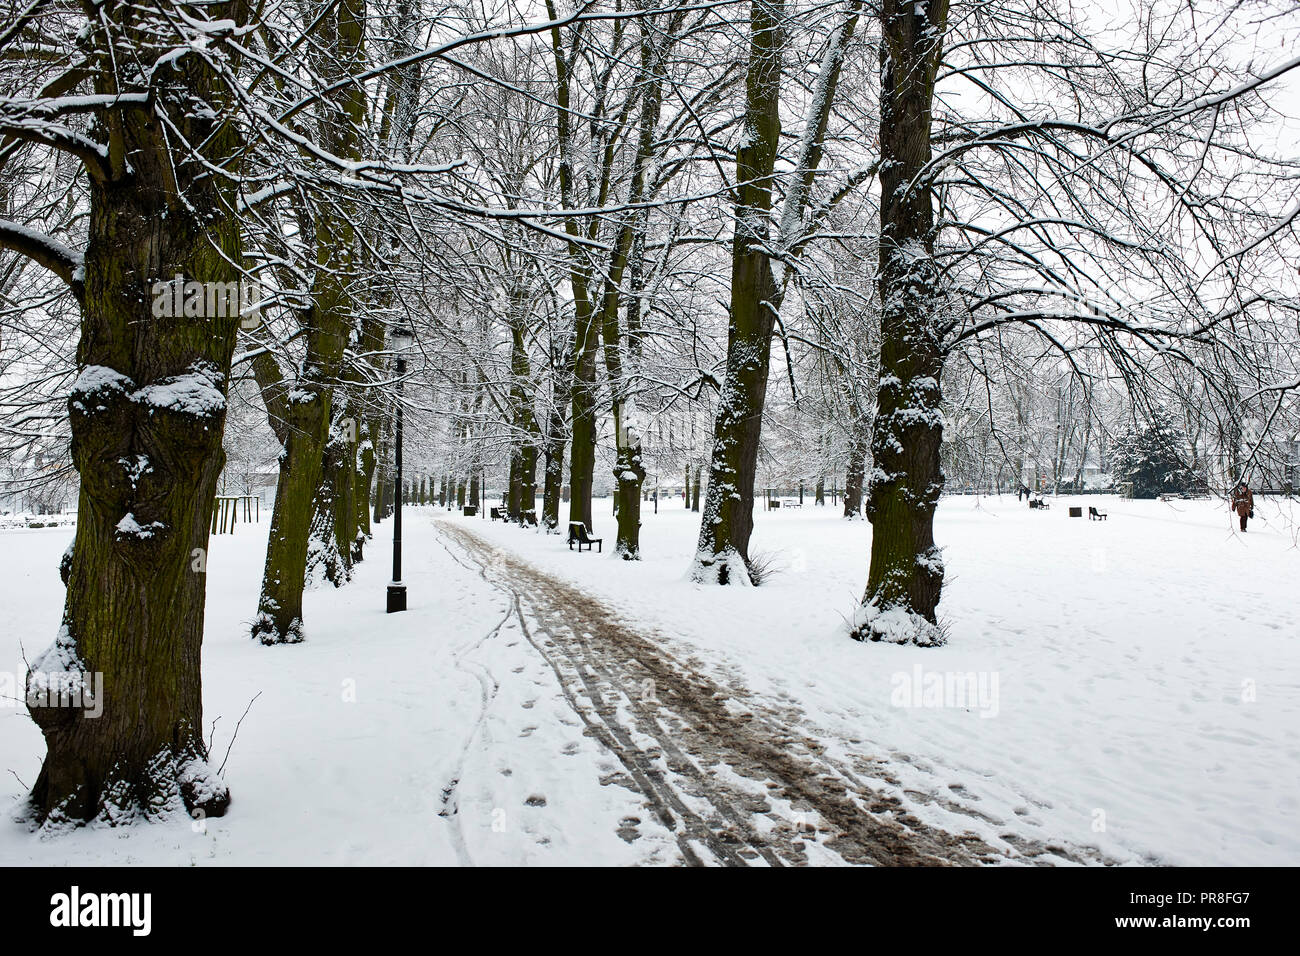 Winter Szene in Cambridge - Christi Stücke. Schnee bedeckt Rasen und Garten mit Bäumen gesäumten Fußweg. Stockfoto